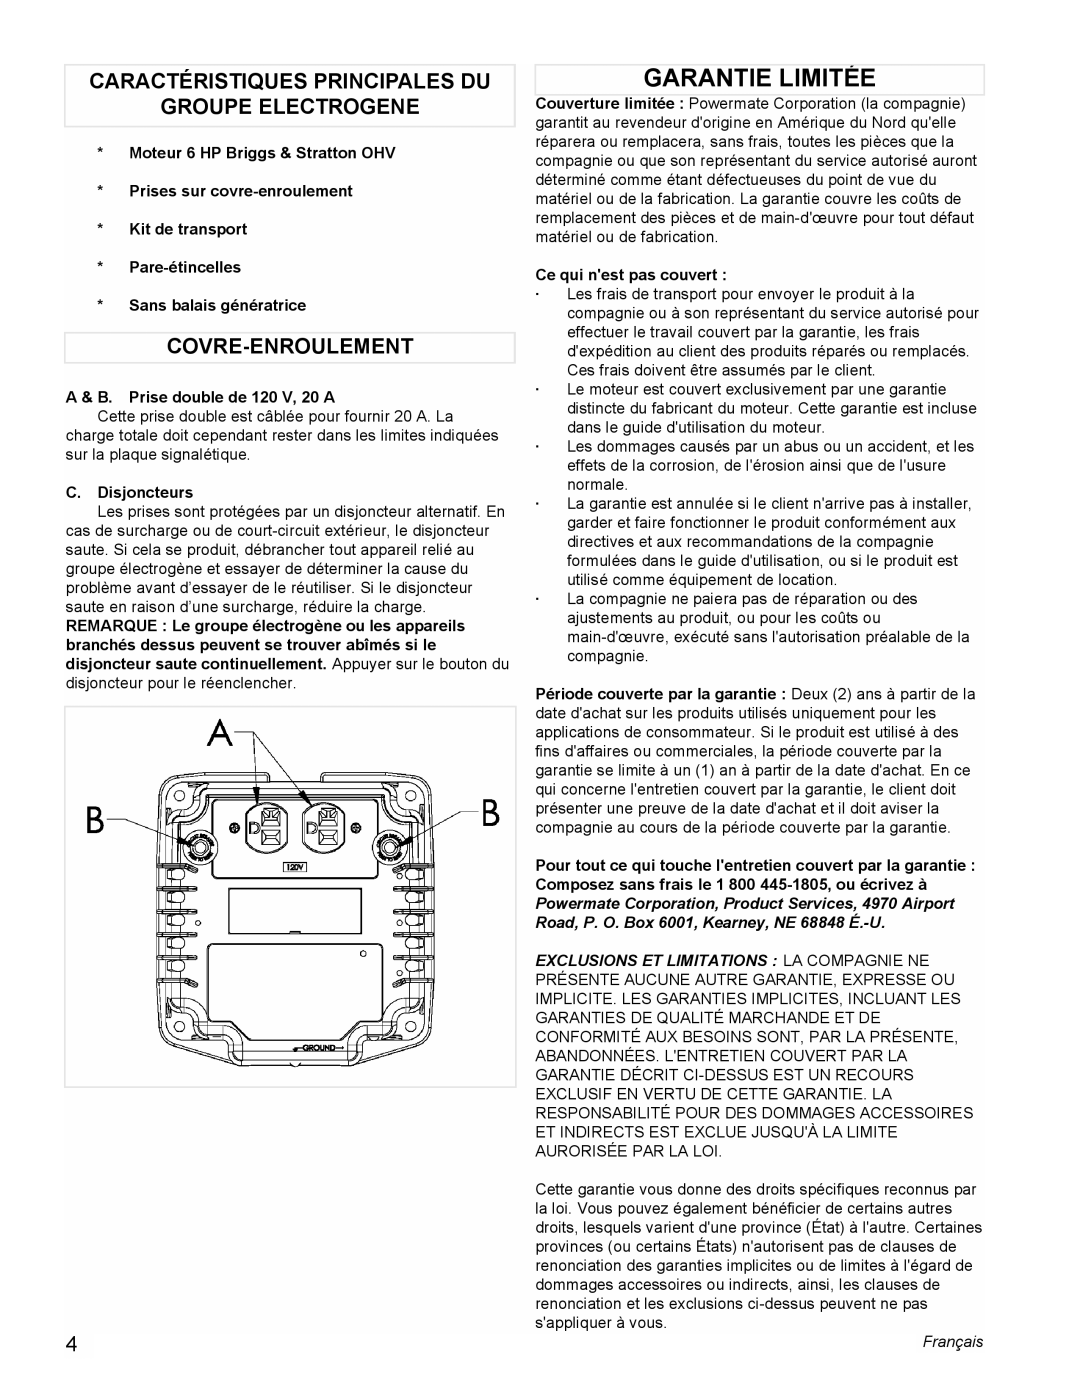 Powermate PMC543000 Garantie Limitée, Caractéristiques Principales Du, Groupe Electrogene, Covre-Enroulement, Français 